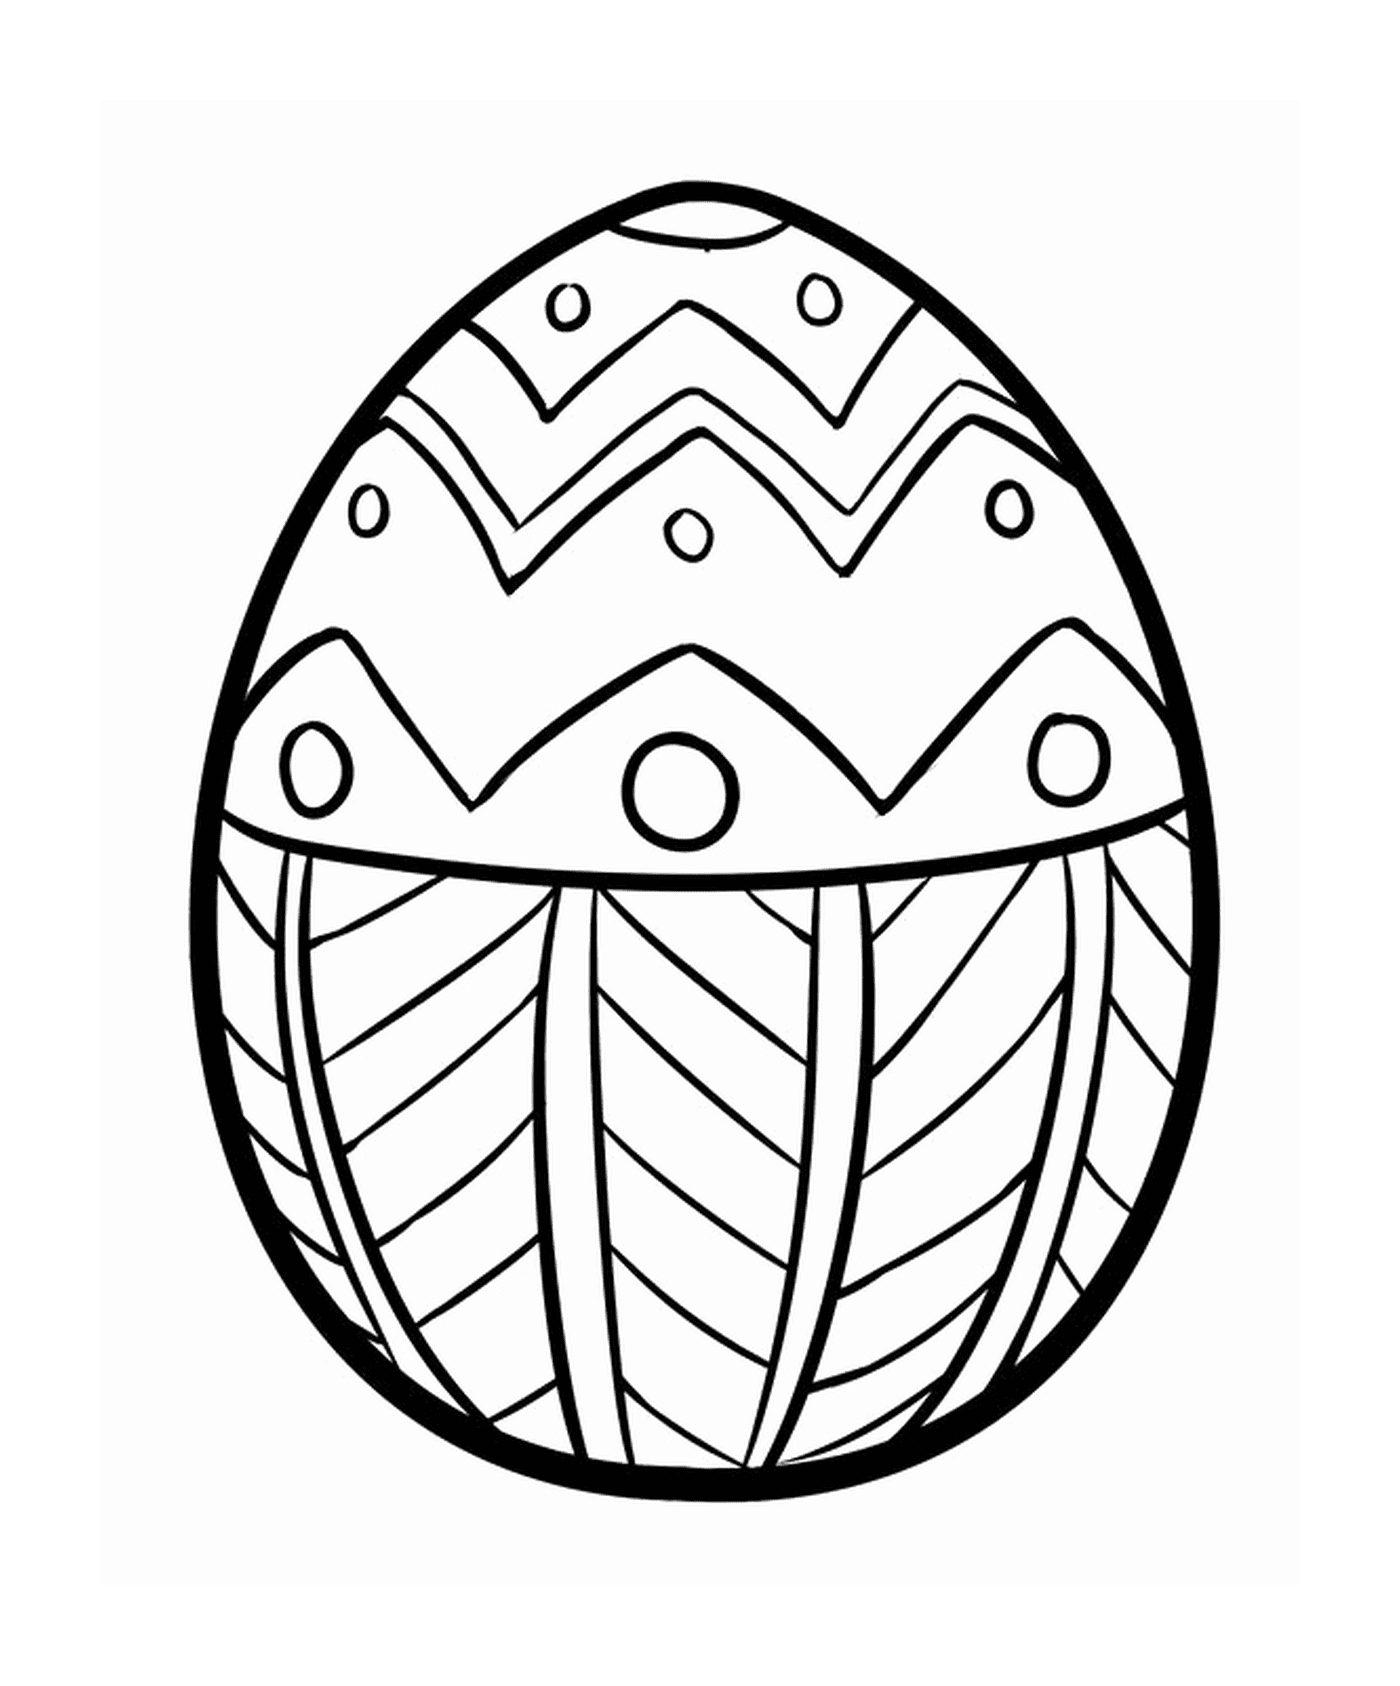  Пасхальное яйцо с заинтригованным дизайном 